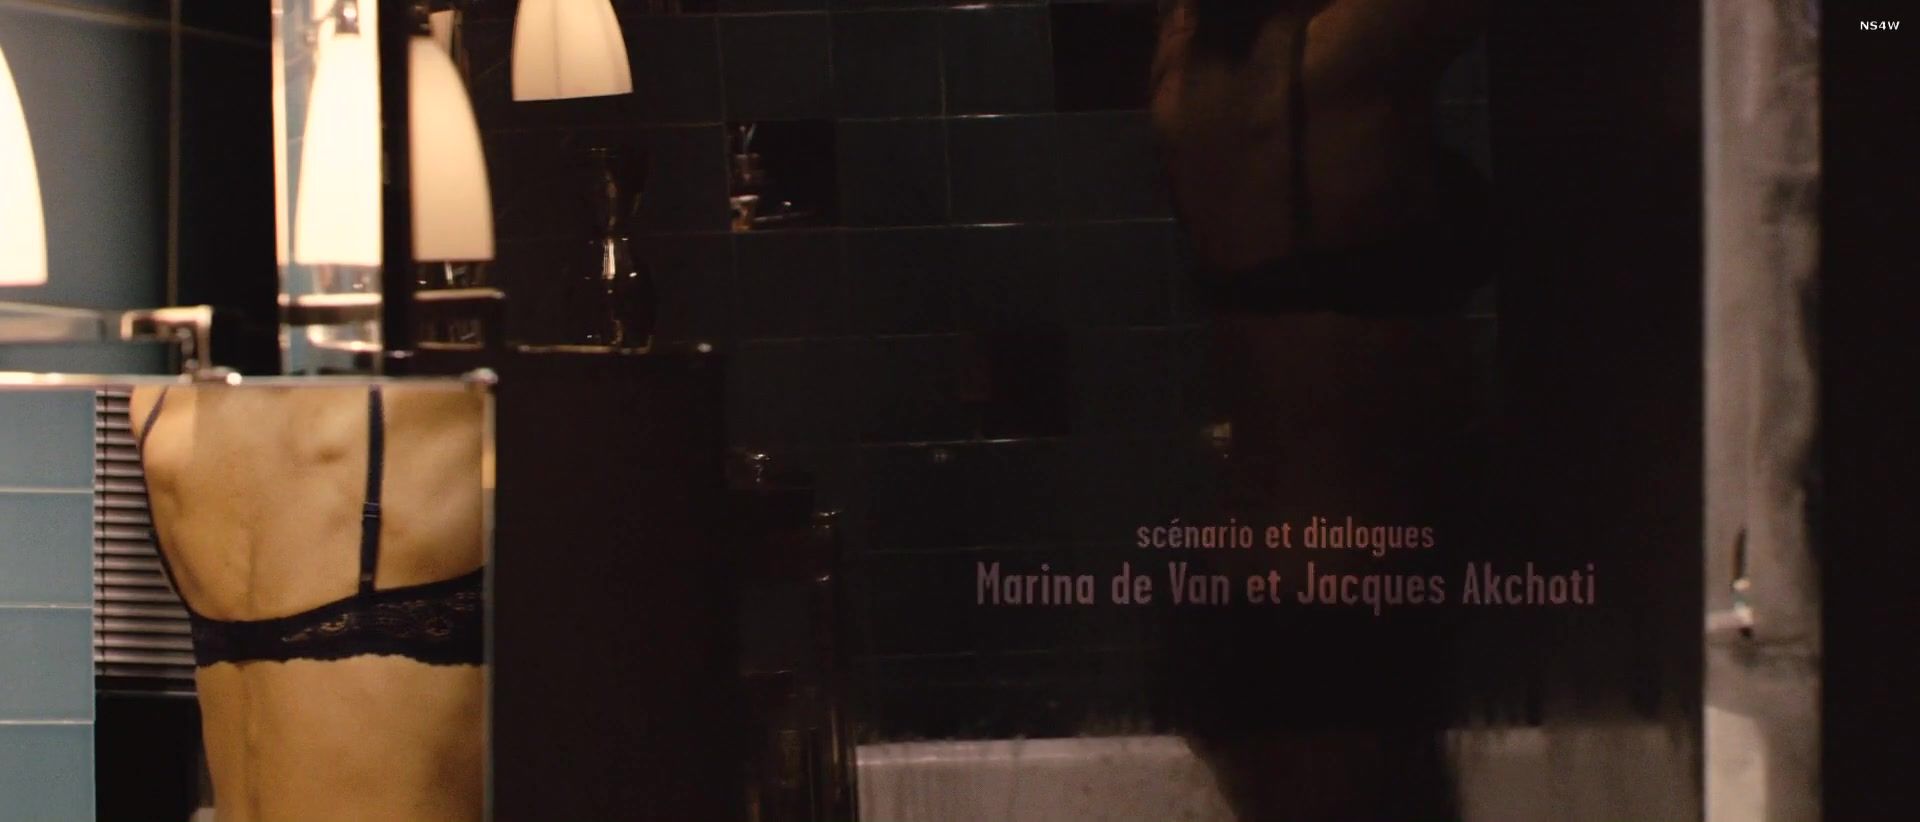 Beurette Sophie Marceau, Monica Bellucci - Ne te retourne pas (2009) Socks